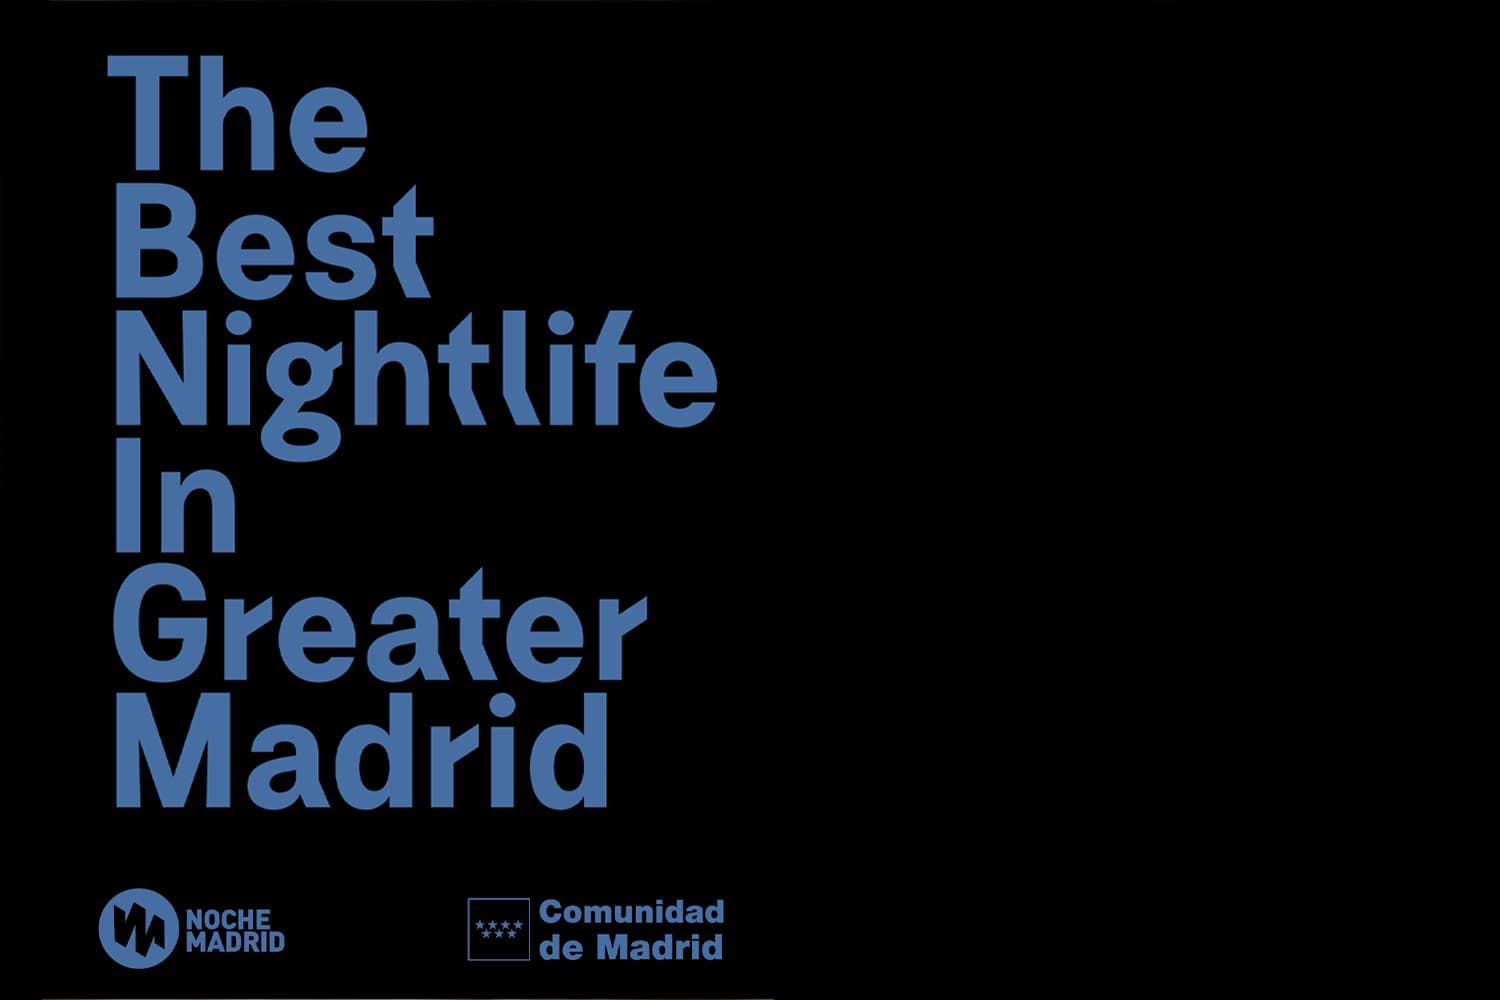 La guía de los mejores locales de ocio y espectáculos de la vida nocturna de la Comunidad de Madrid